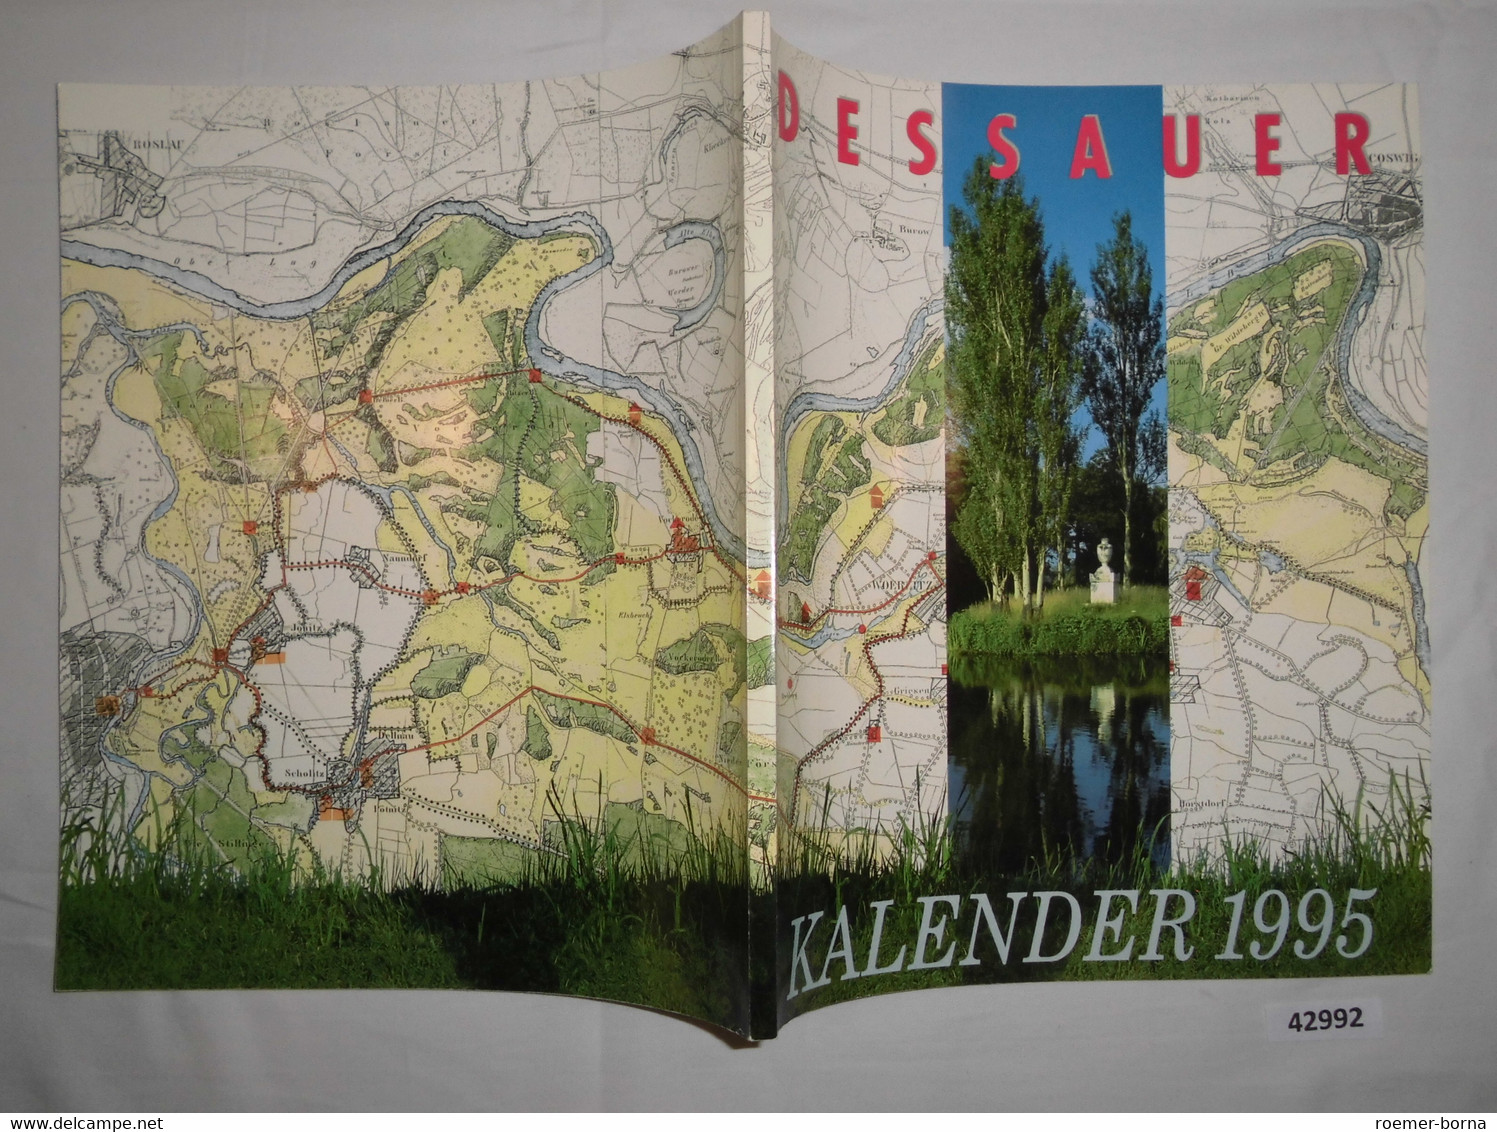 Dessauer Kalender 1995 (39. Jahrgang) - Calendriers